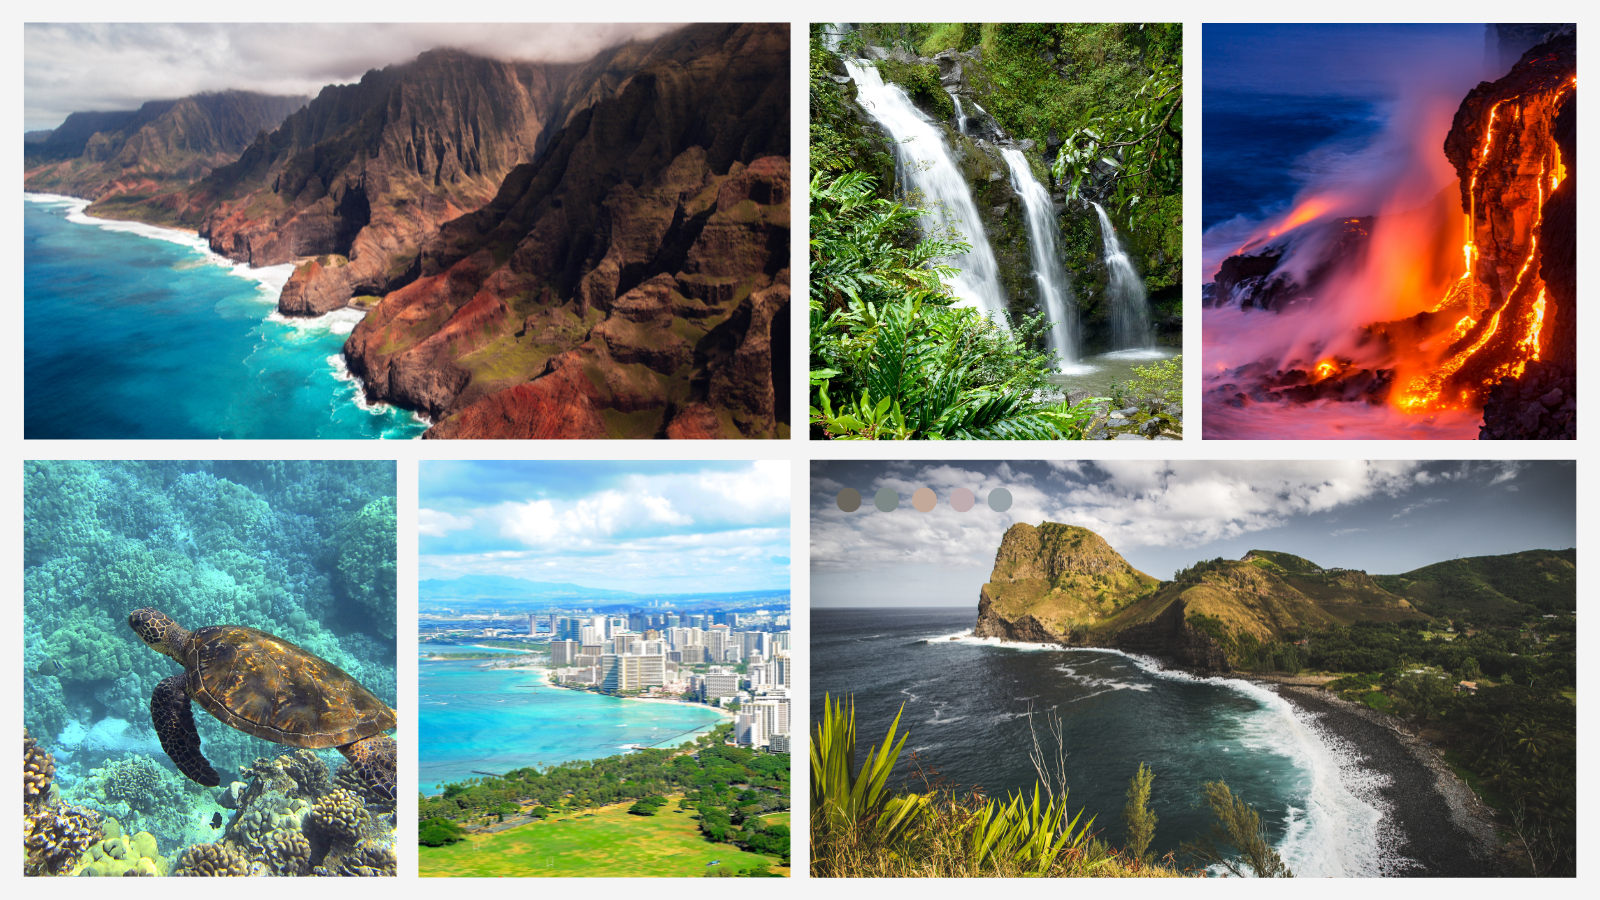 Say Aloha to Your Dream Hawaiian Island